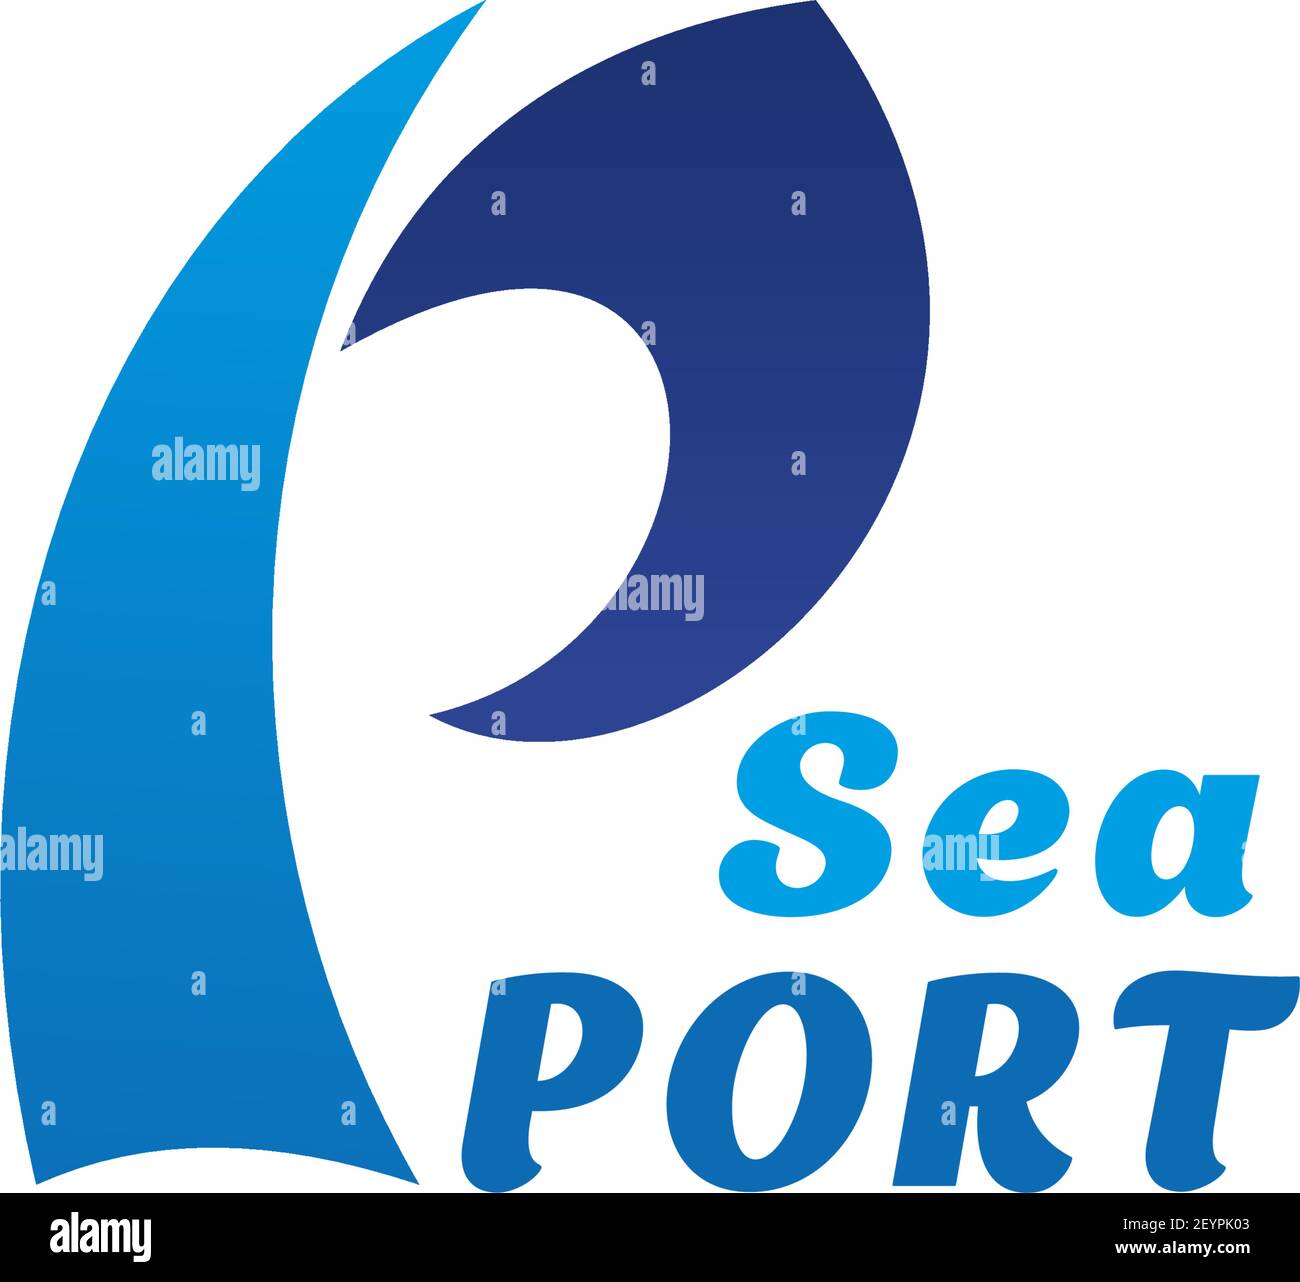 Modello icona Seaport di onda d'acqua e lettera P. Vector disegno isolato di simbolo blu d'onda d'acqua per mare o porto navale di imbarcazioni industriali o per passeggeri Illustrazione Vettoriale